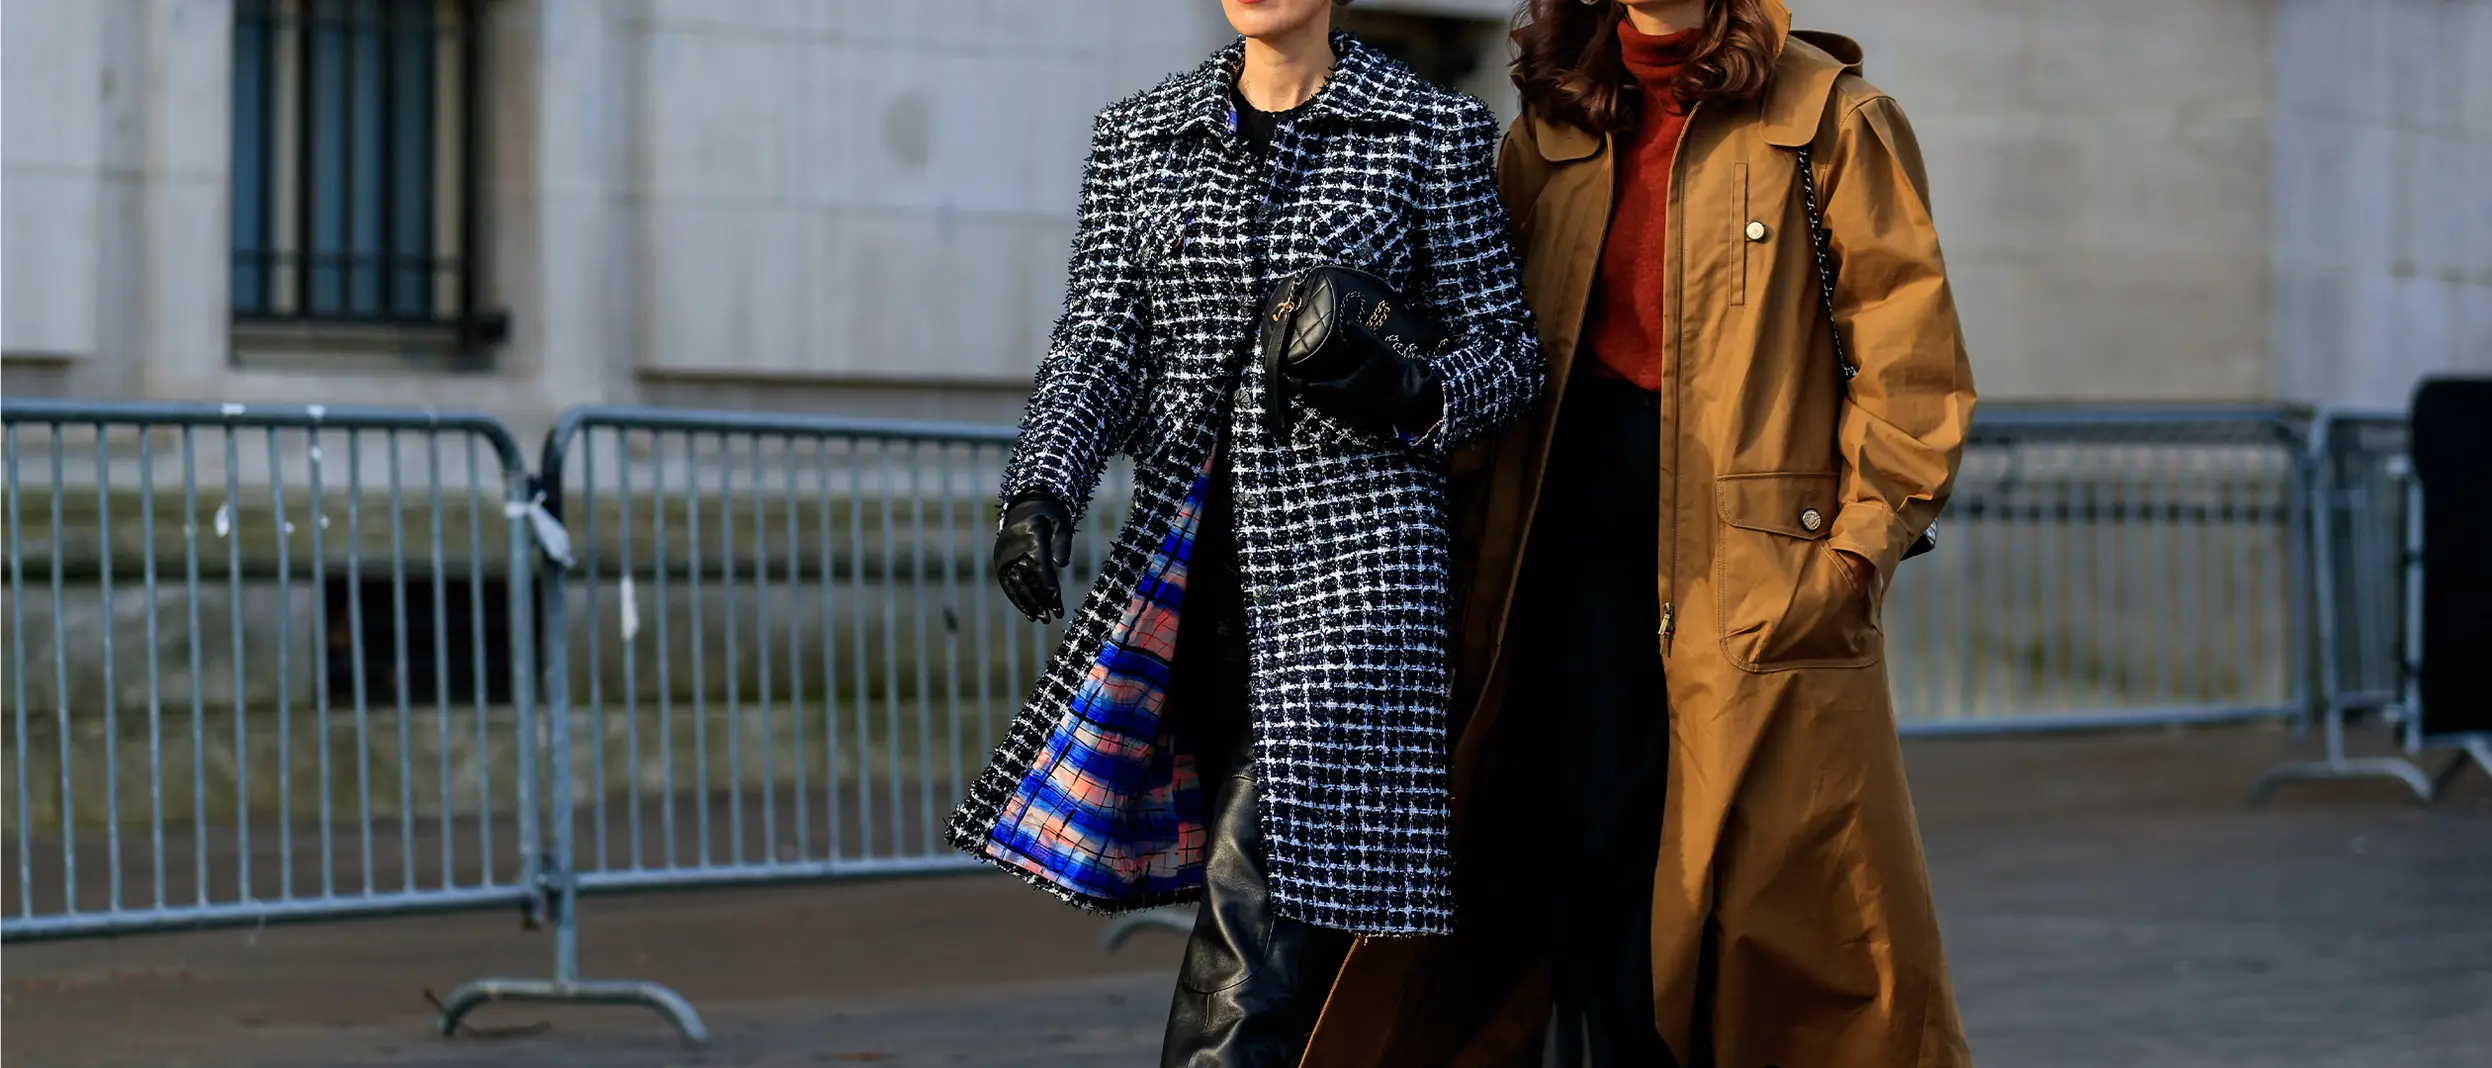 women-walking-jacket-coat-street-style-fashion-week.jpg